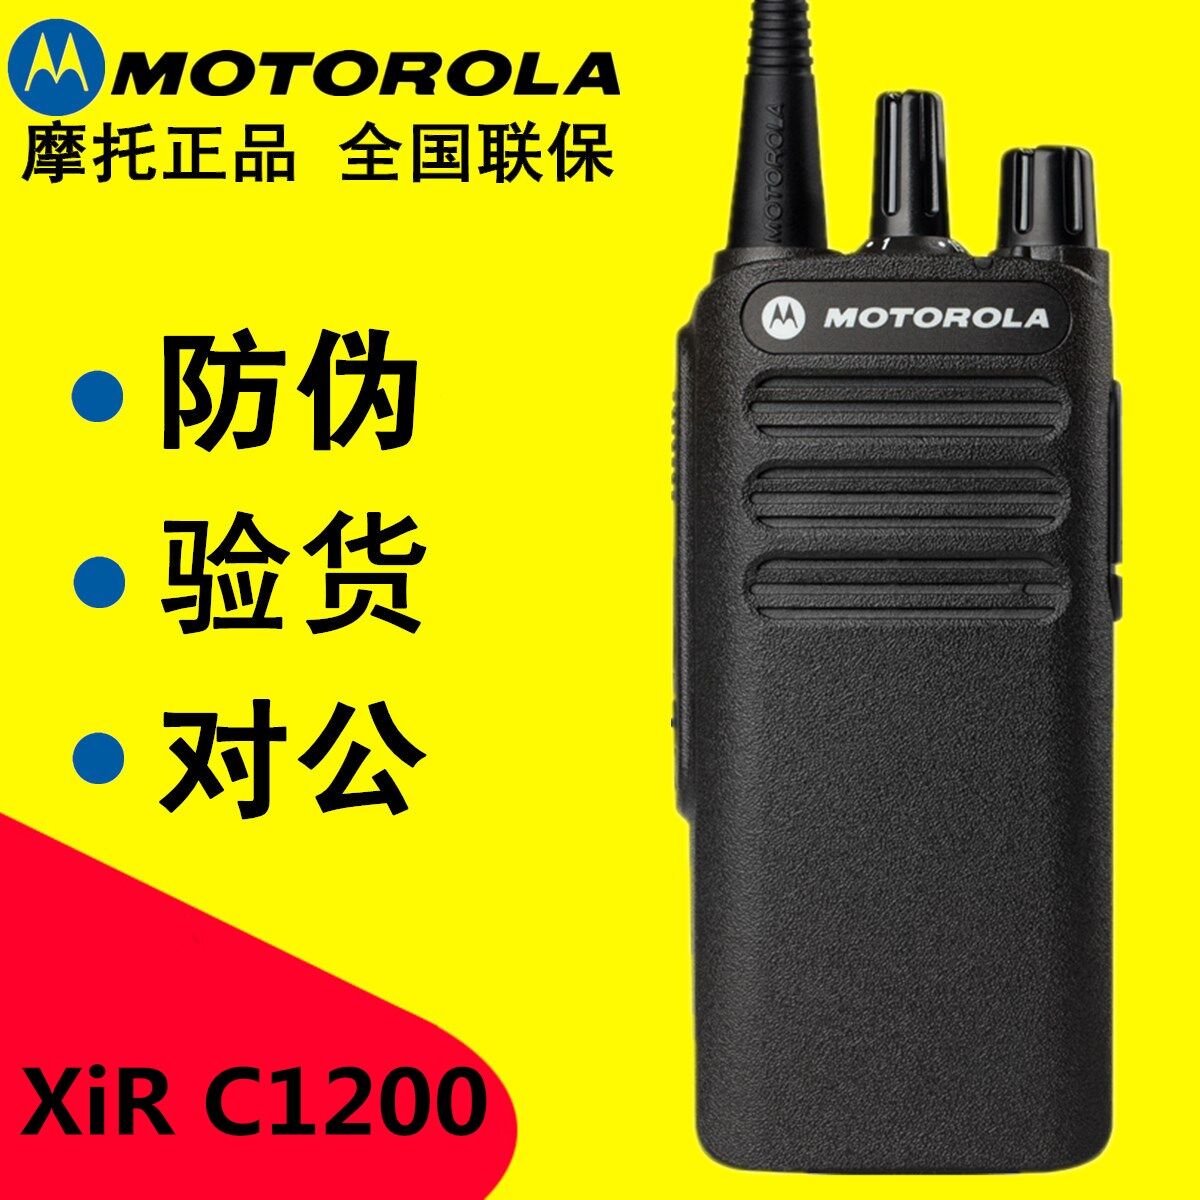 摩托罗拉XIR C1200数字对讲机XIR P3688户外手台XIR P6620i对讲机